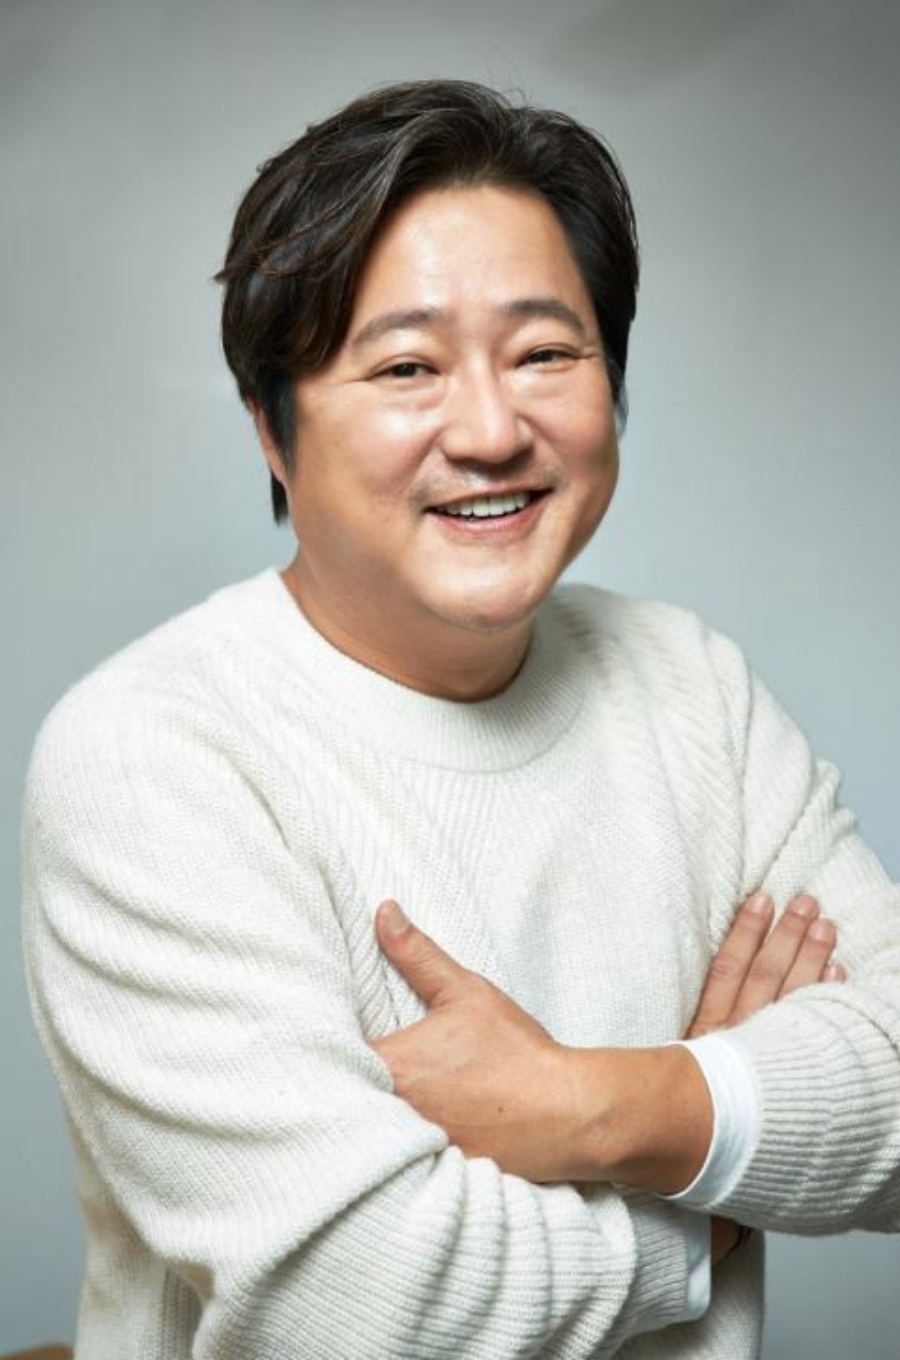 ▲ 배우 곽도원. 제공| 마다엔터테인먼트